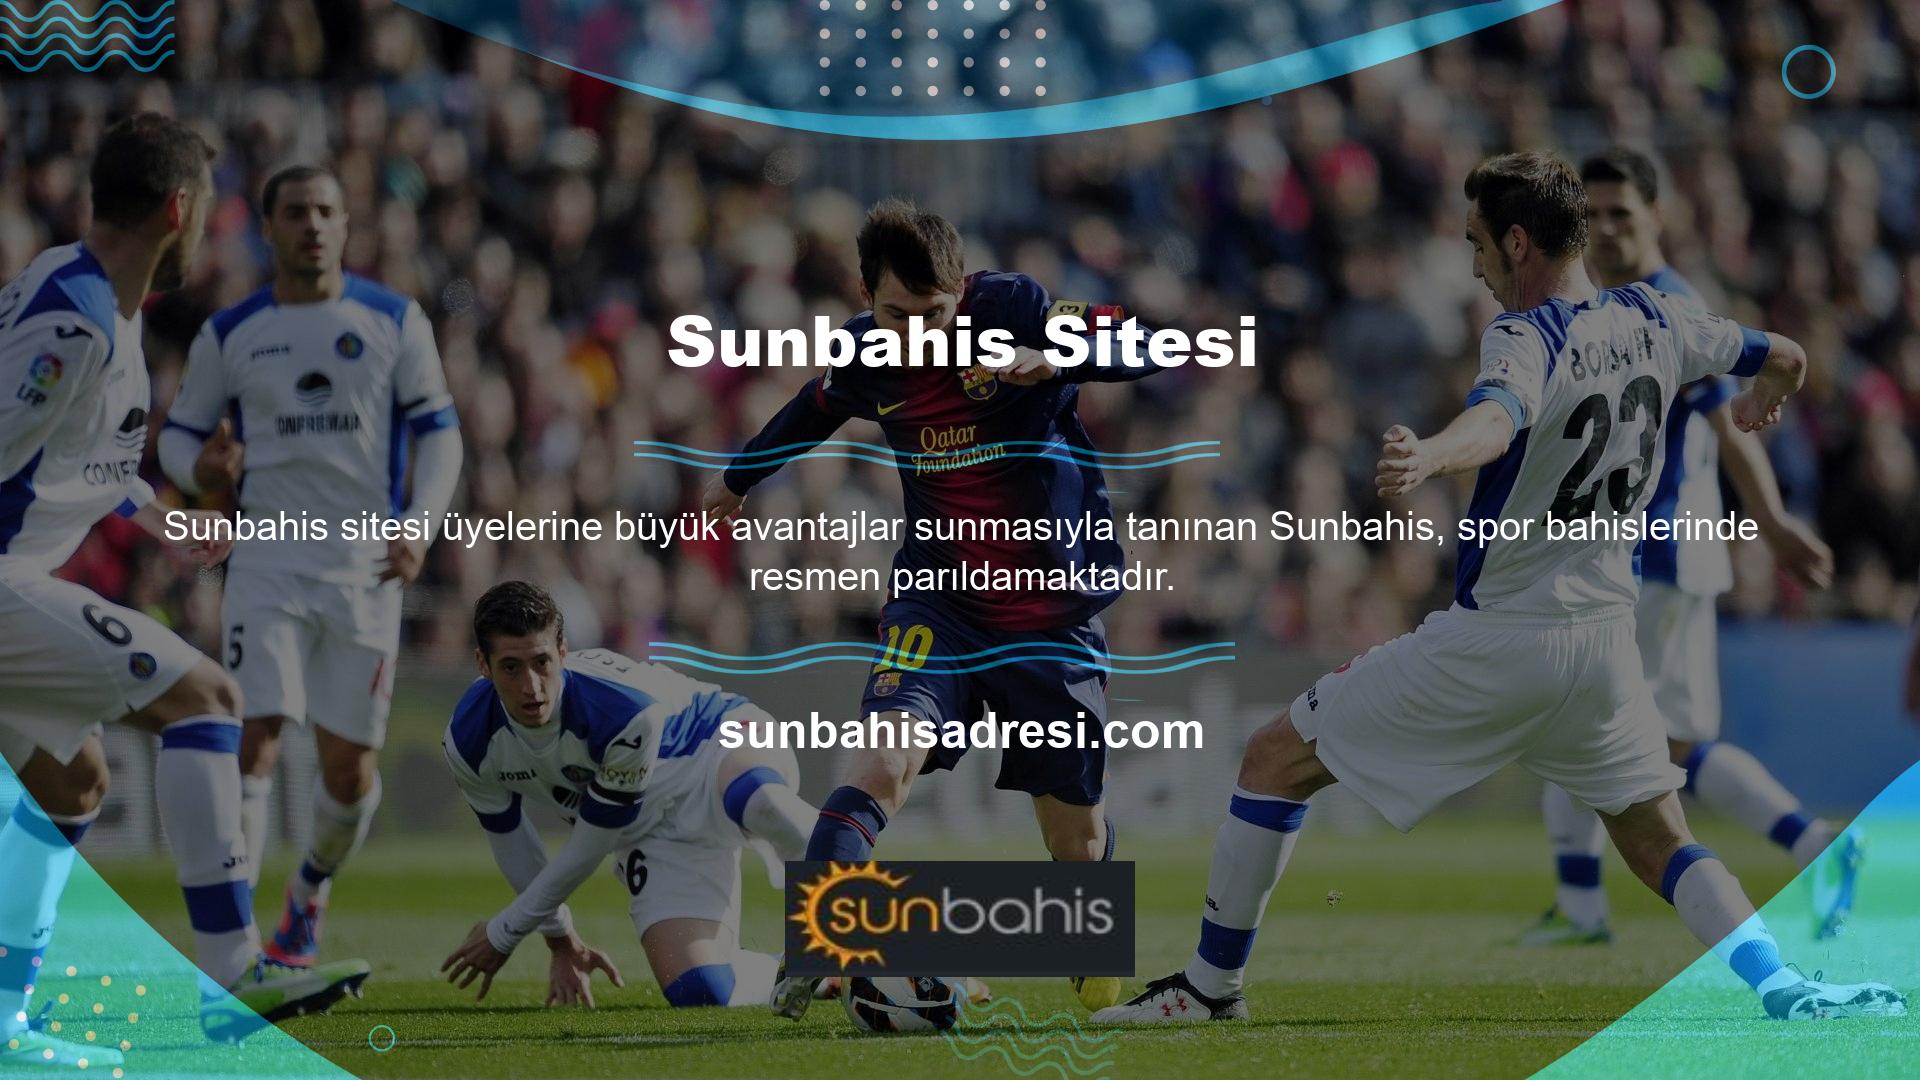 Üyelerine birçok oyun sunan Sunbahis, bu anlamda en iyi online bahis siteleri arasında yerini sağlamlaştırmıştır